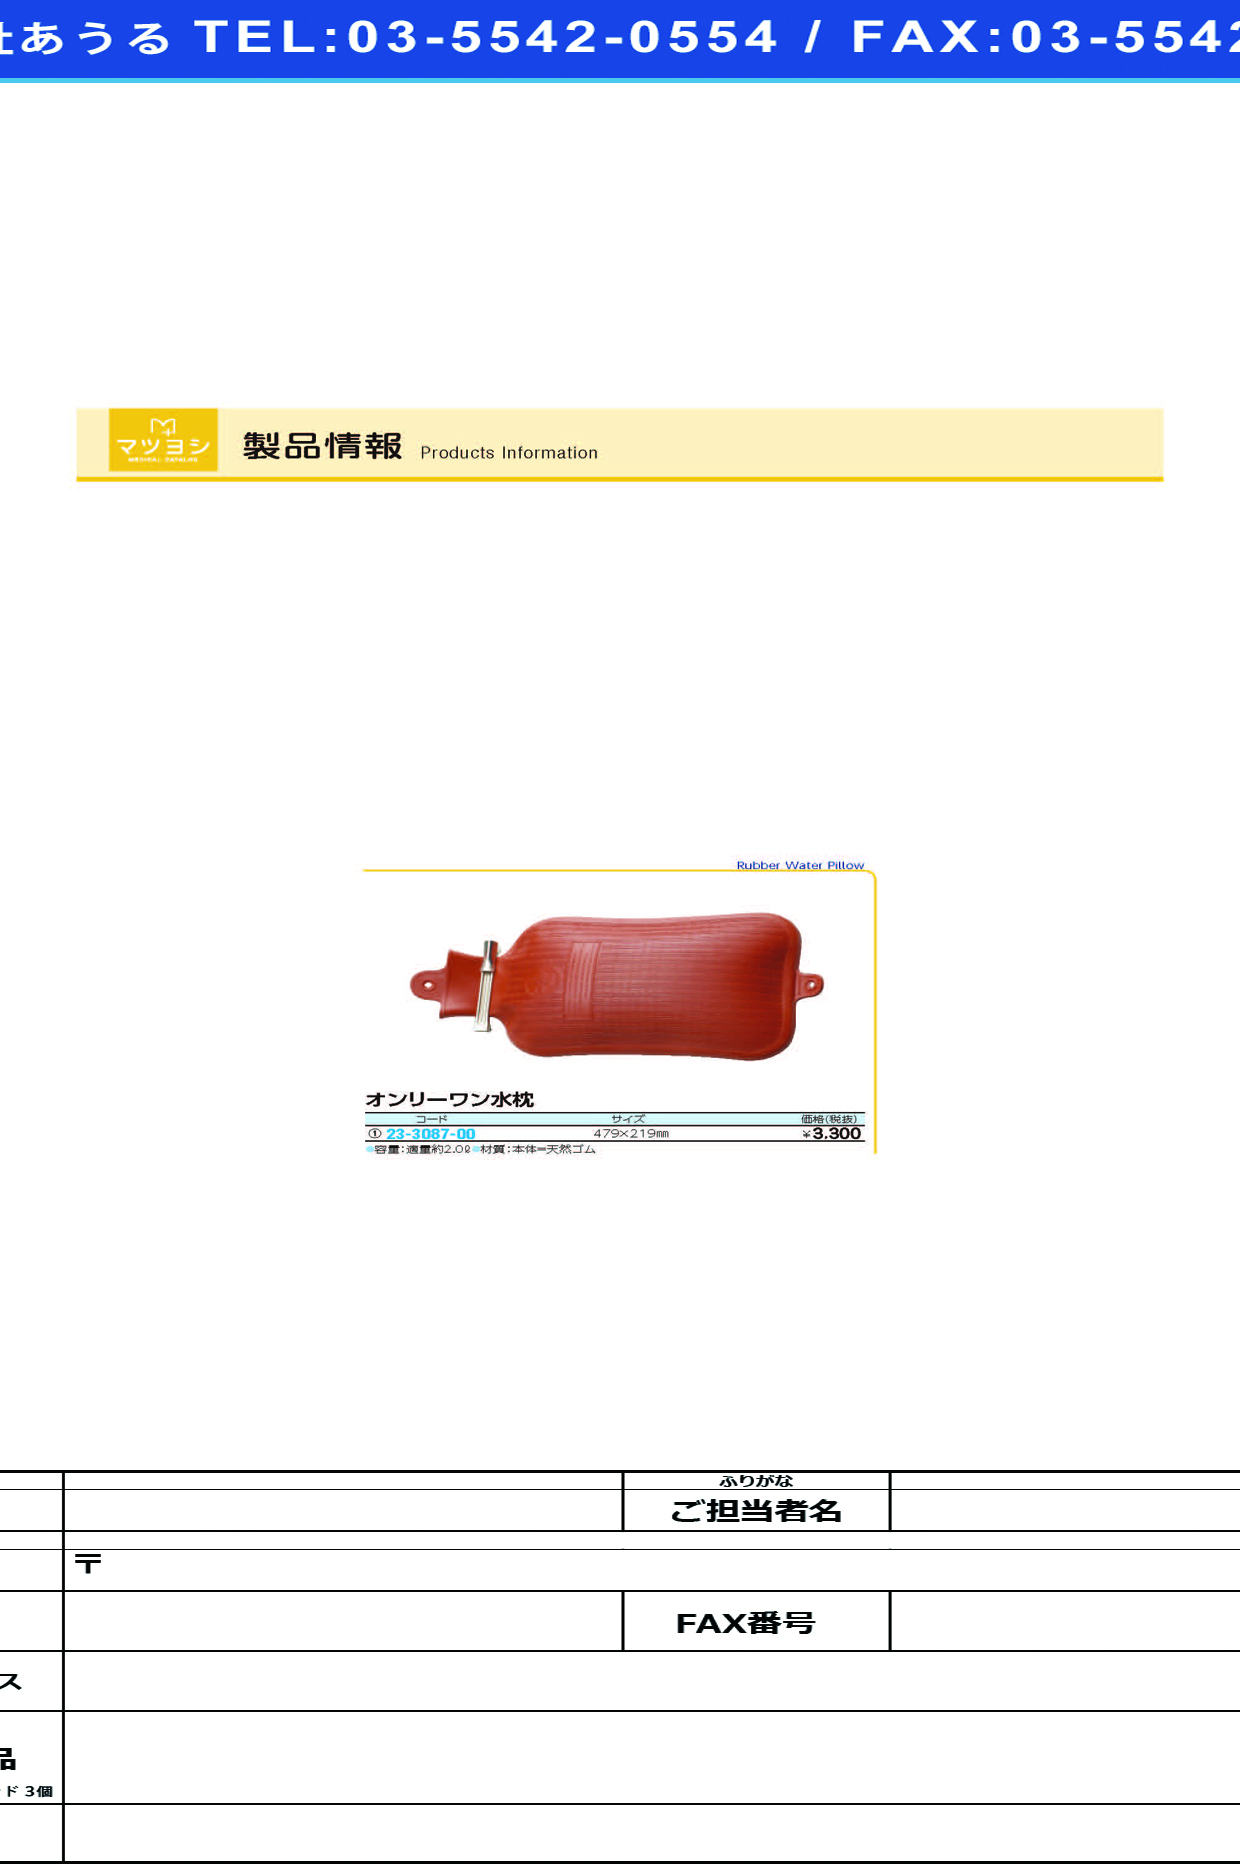 (23-3087-00)オンリーワン水枕  ｵﾝﾘｰﾜﾝﾐｽﾞﾏｸﾗ【1個単位】【2019年カタログ商品】